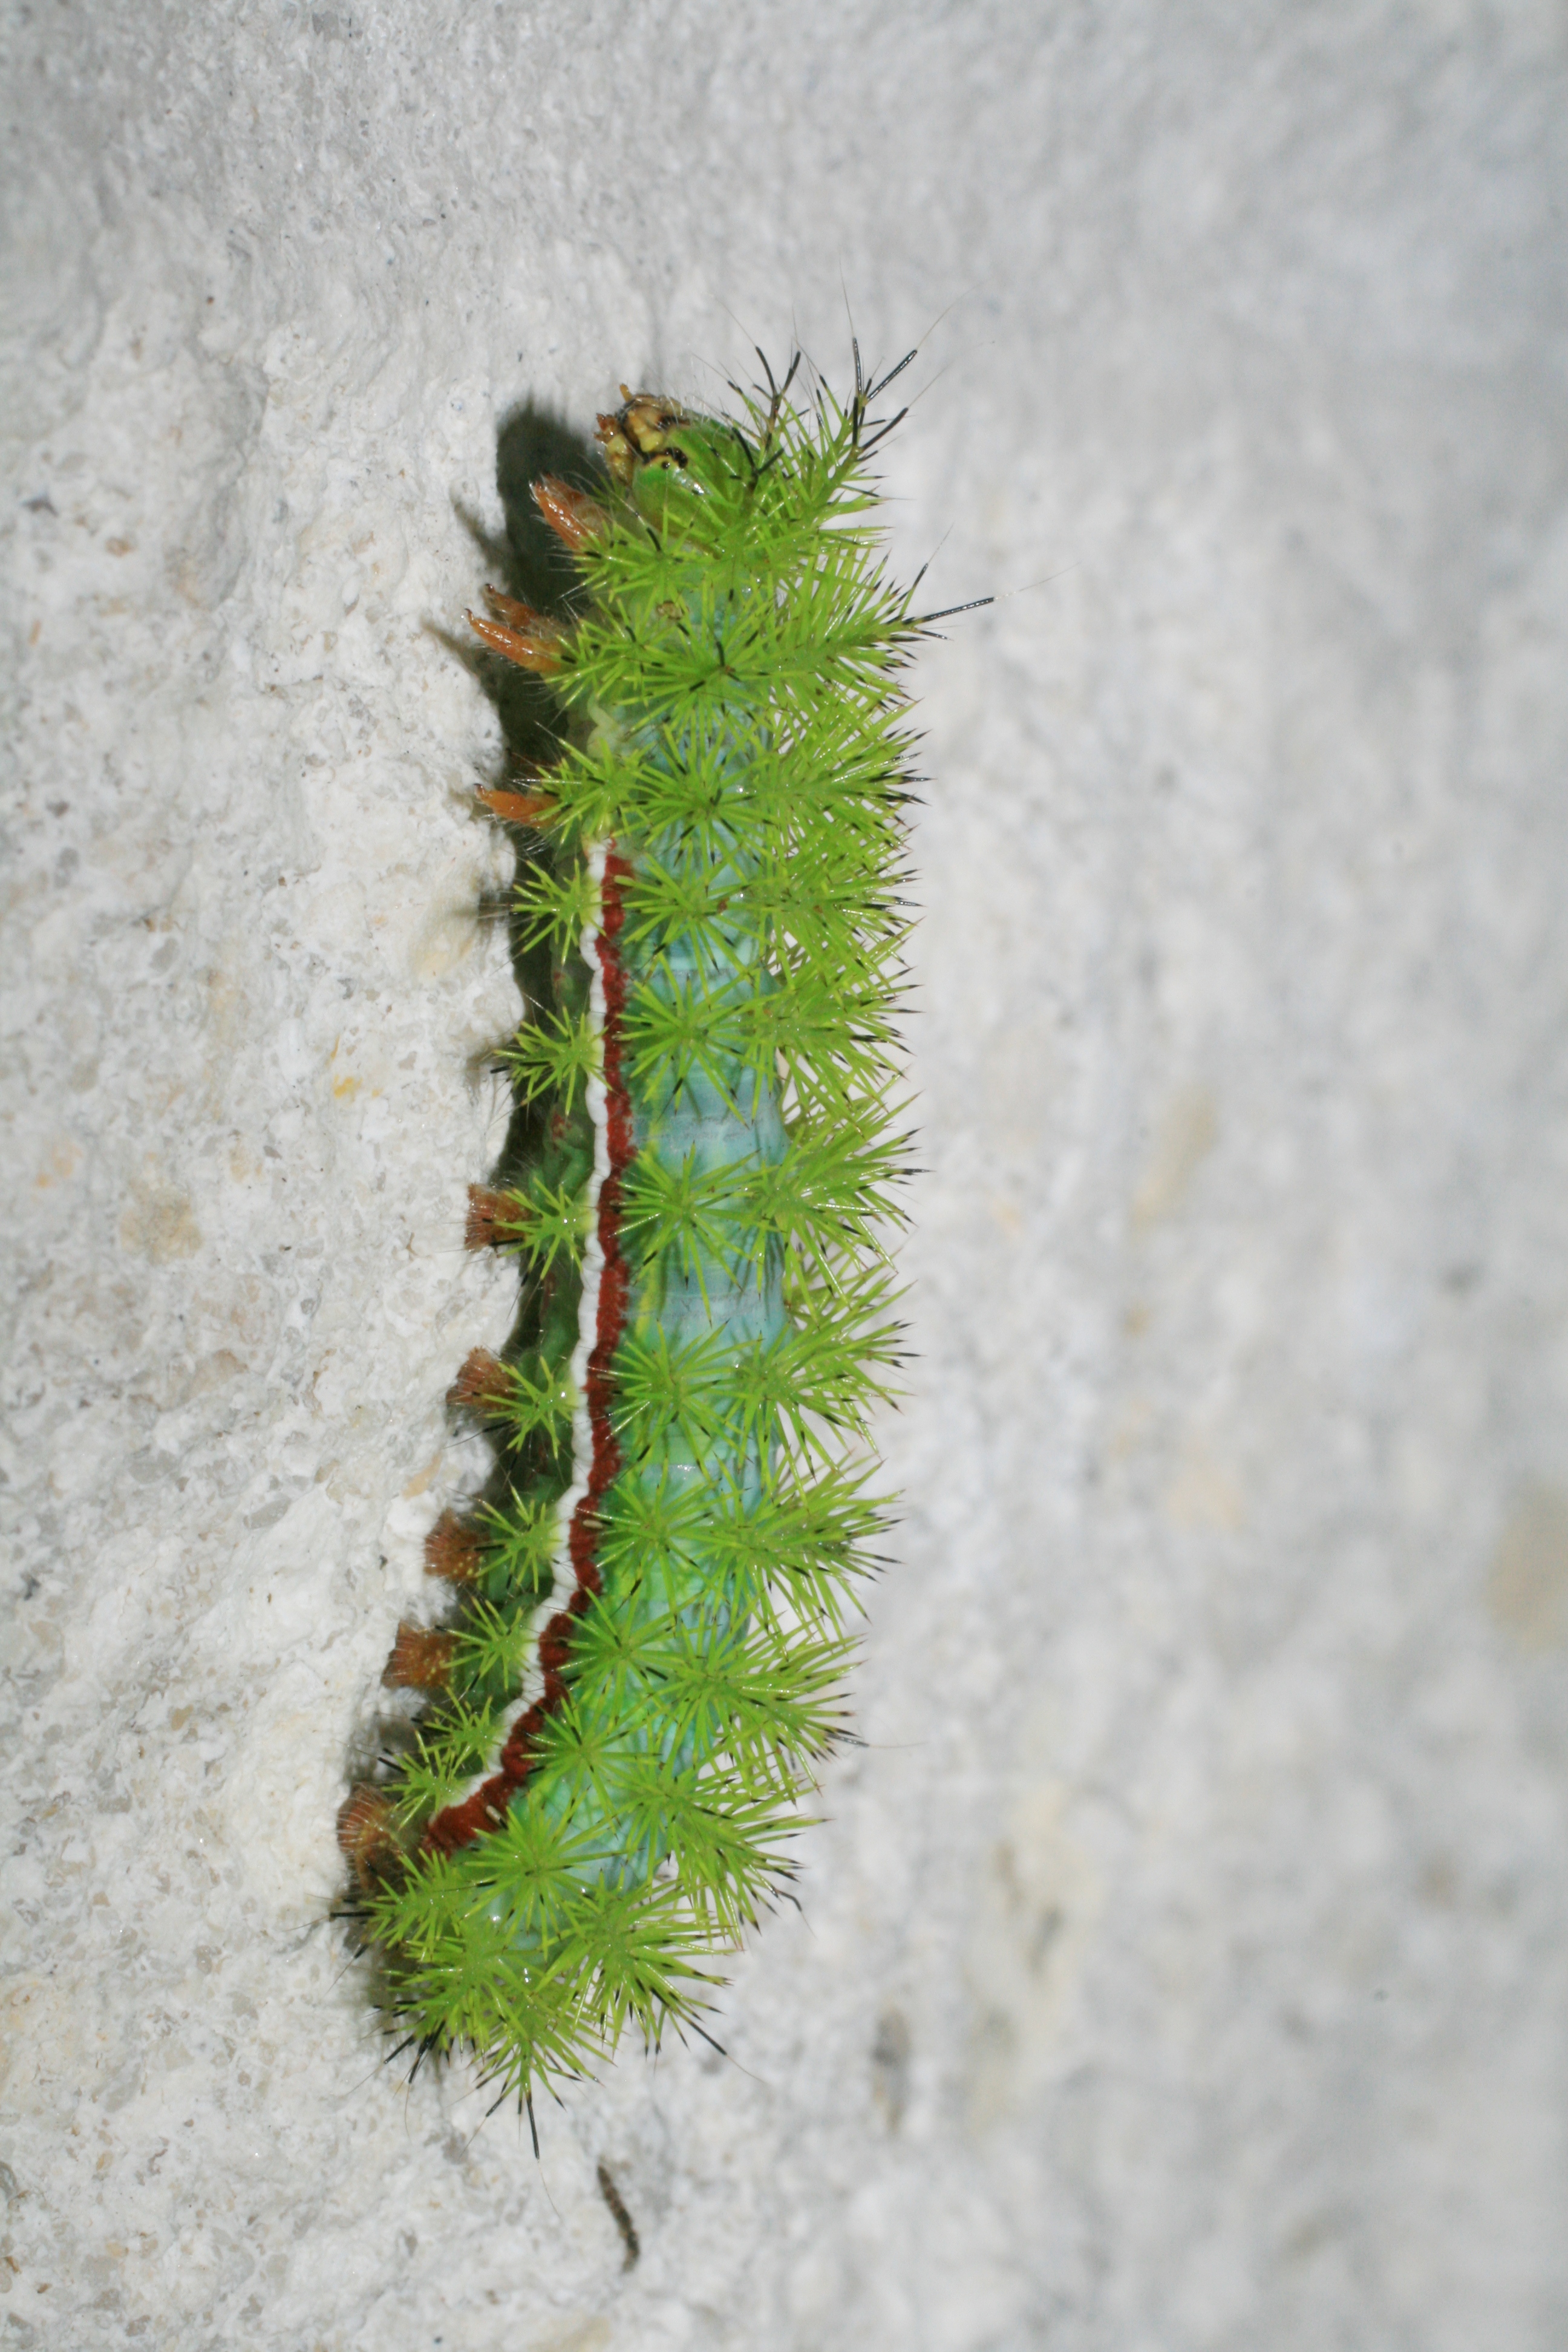 Green caterpillar in Loxahatchee